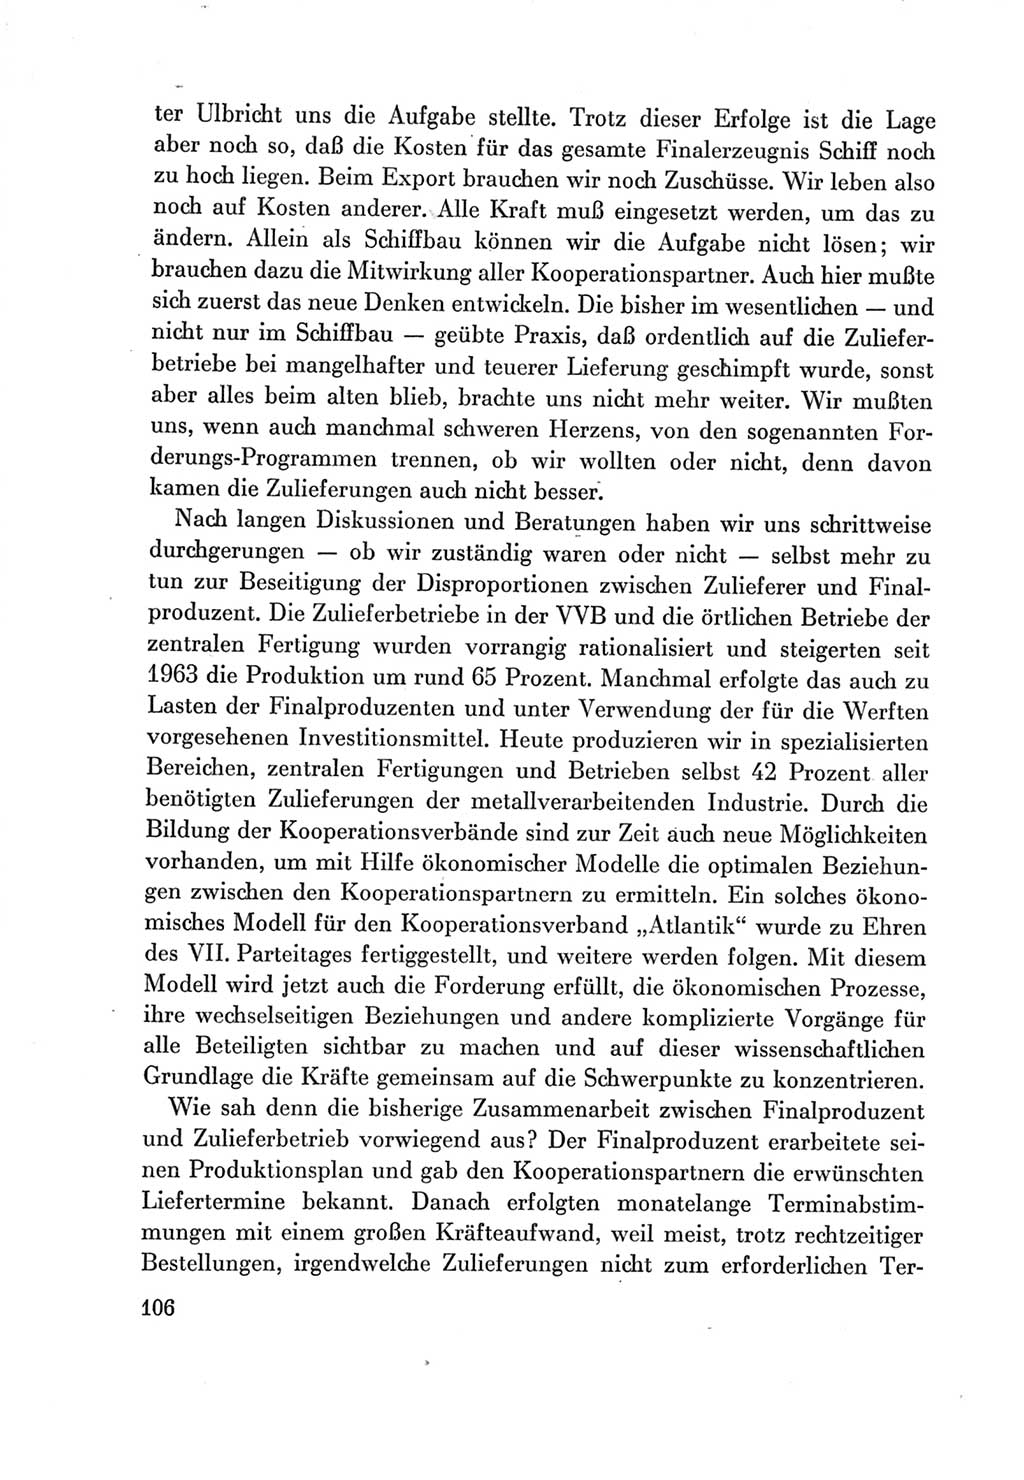 Protokoll der Verhandlungen des Ⅶ. Parteitages der Sozialistischen Einheitspartei Deutschlands (SED) [Deutsche Demokratische Republik (DDR)] 1967, Band Ⅲ, Seite 106 (Prot. Verh. Ⅶ. PT SED DDR 1967, Bd. Ⅲ, S. 106)